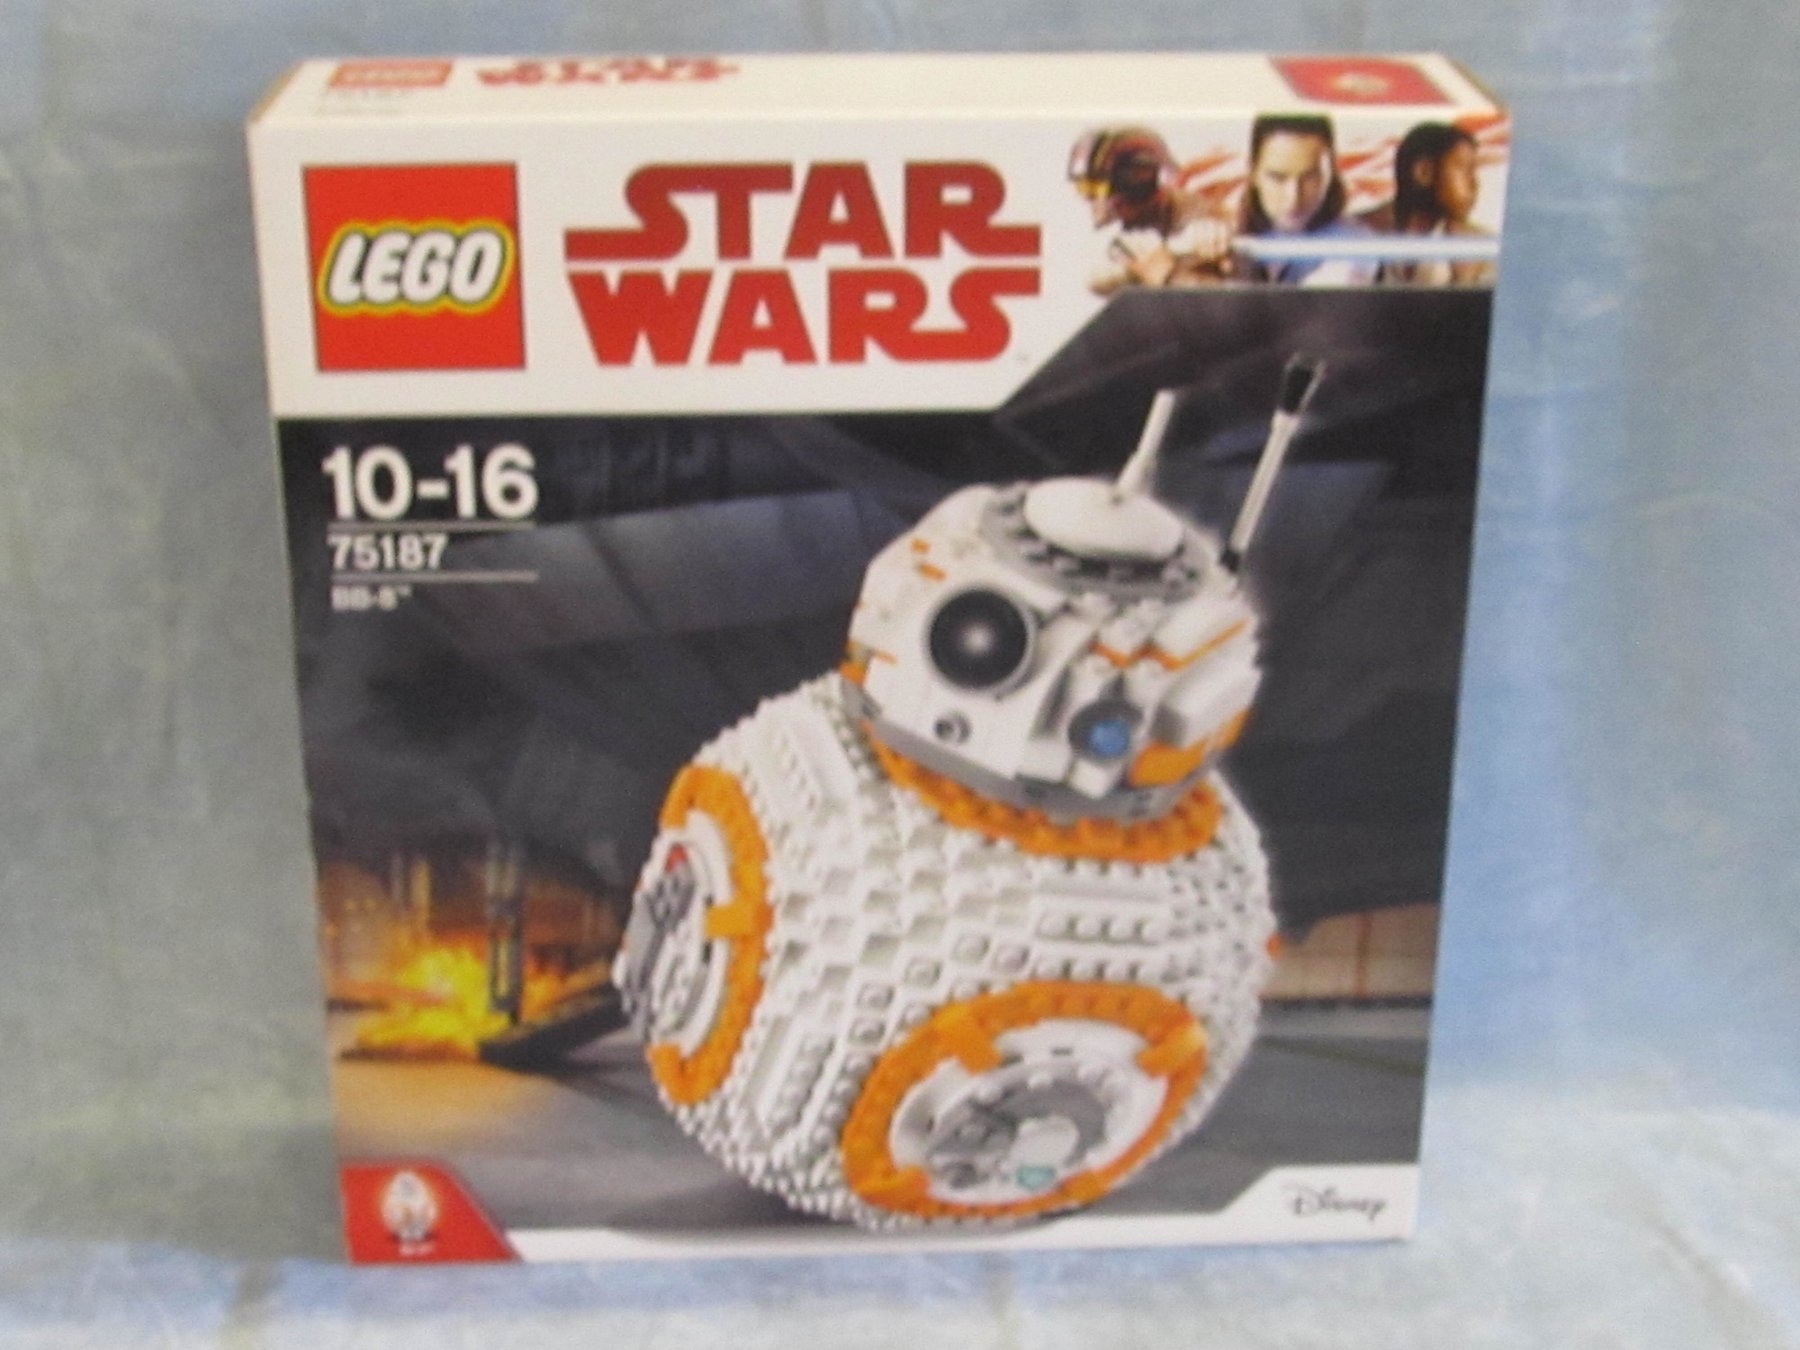 Lego - Star Wars - 75187 - BB - 8 Csillagok háborúja, 1106 - Catawiki